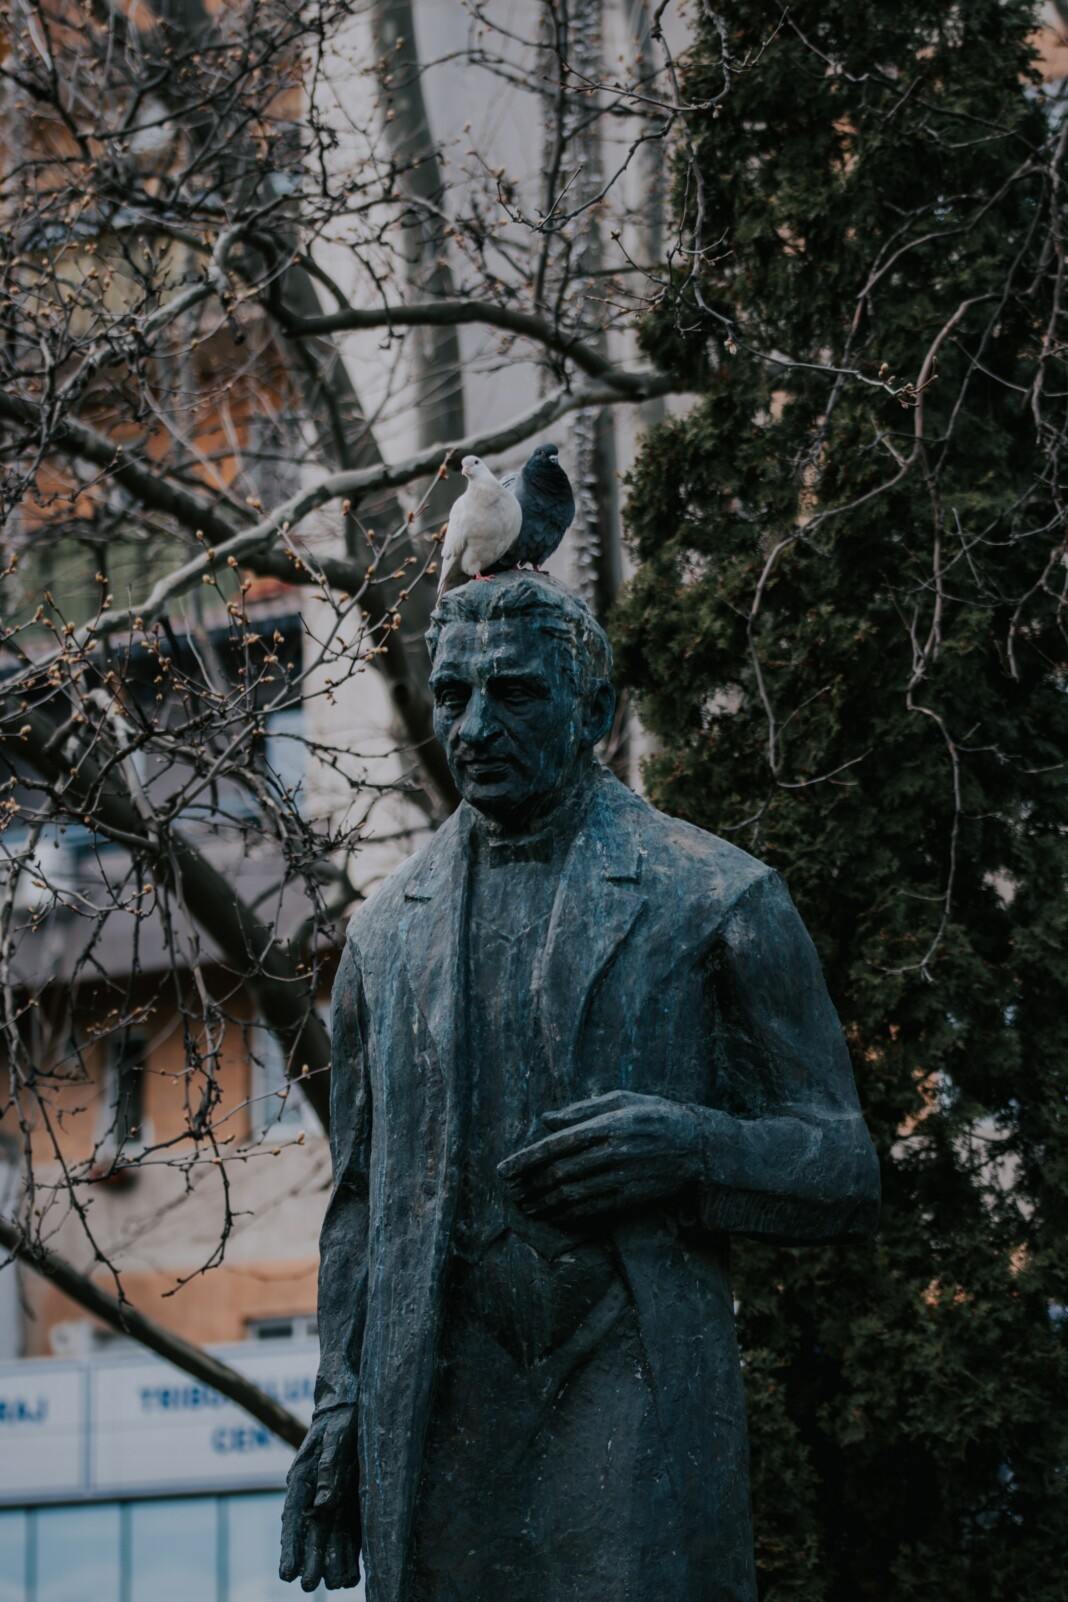 Deux pigeons perchés sur une statue de pierre représentant un personnage historique, la tête de la statue ornée de taches blanches de fiente de pigeon, évoquant une rencontre ludique entre l'art et la nature.